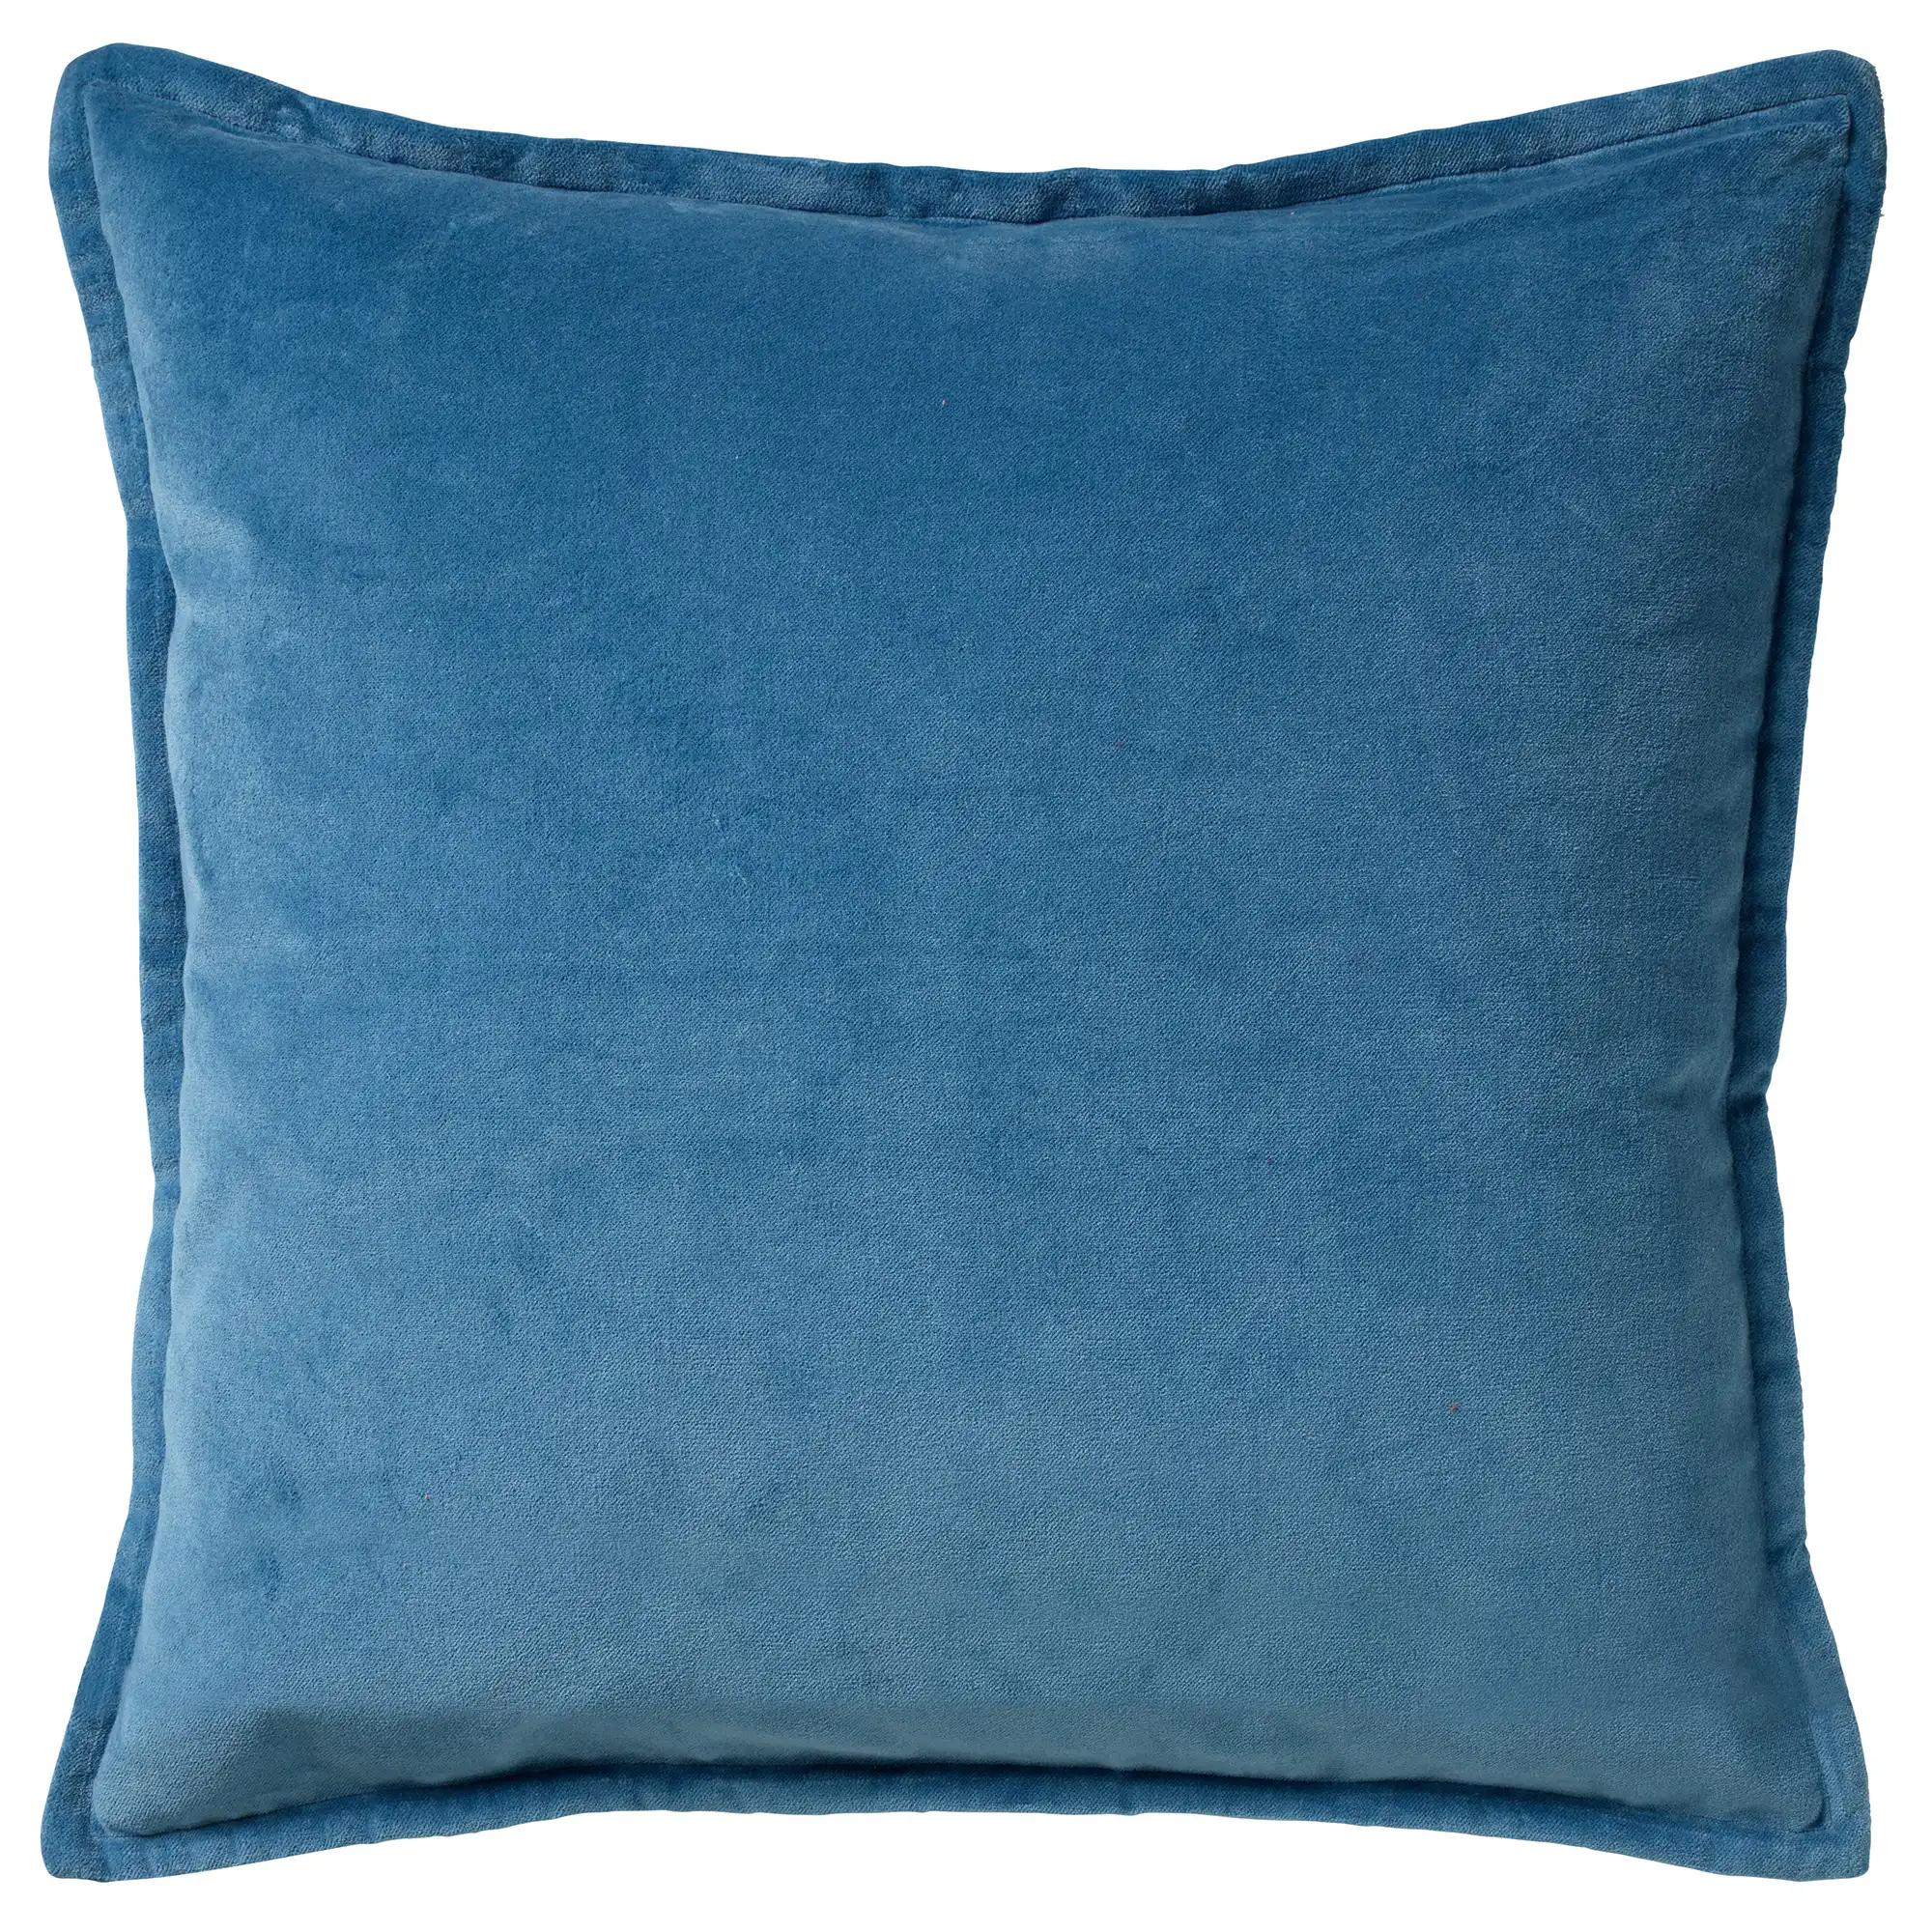 CAITH - Cushion 50x50 cm Provincial Blue - blue